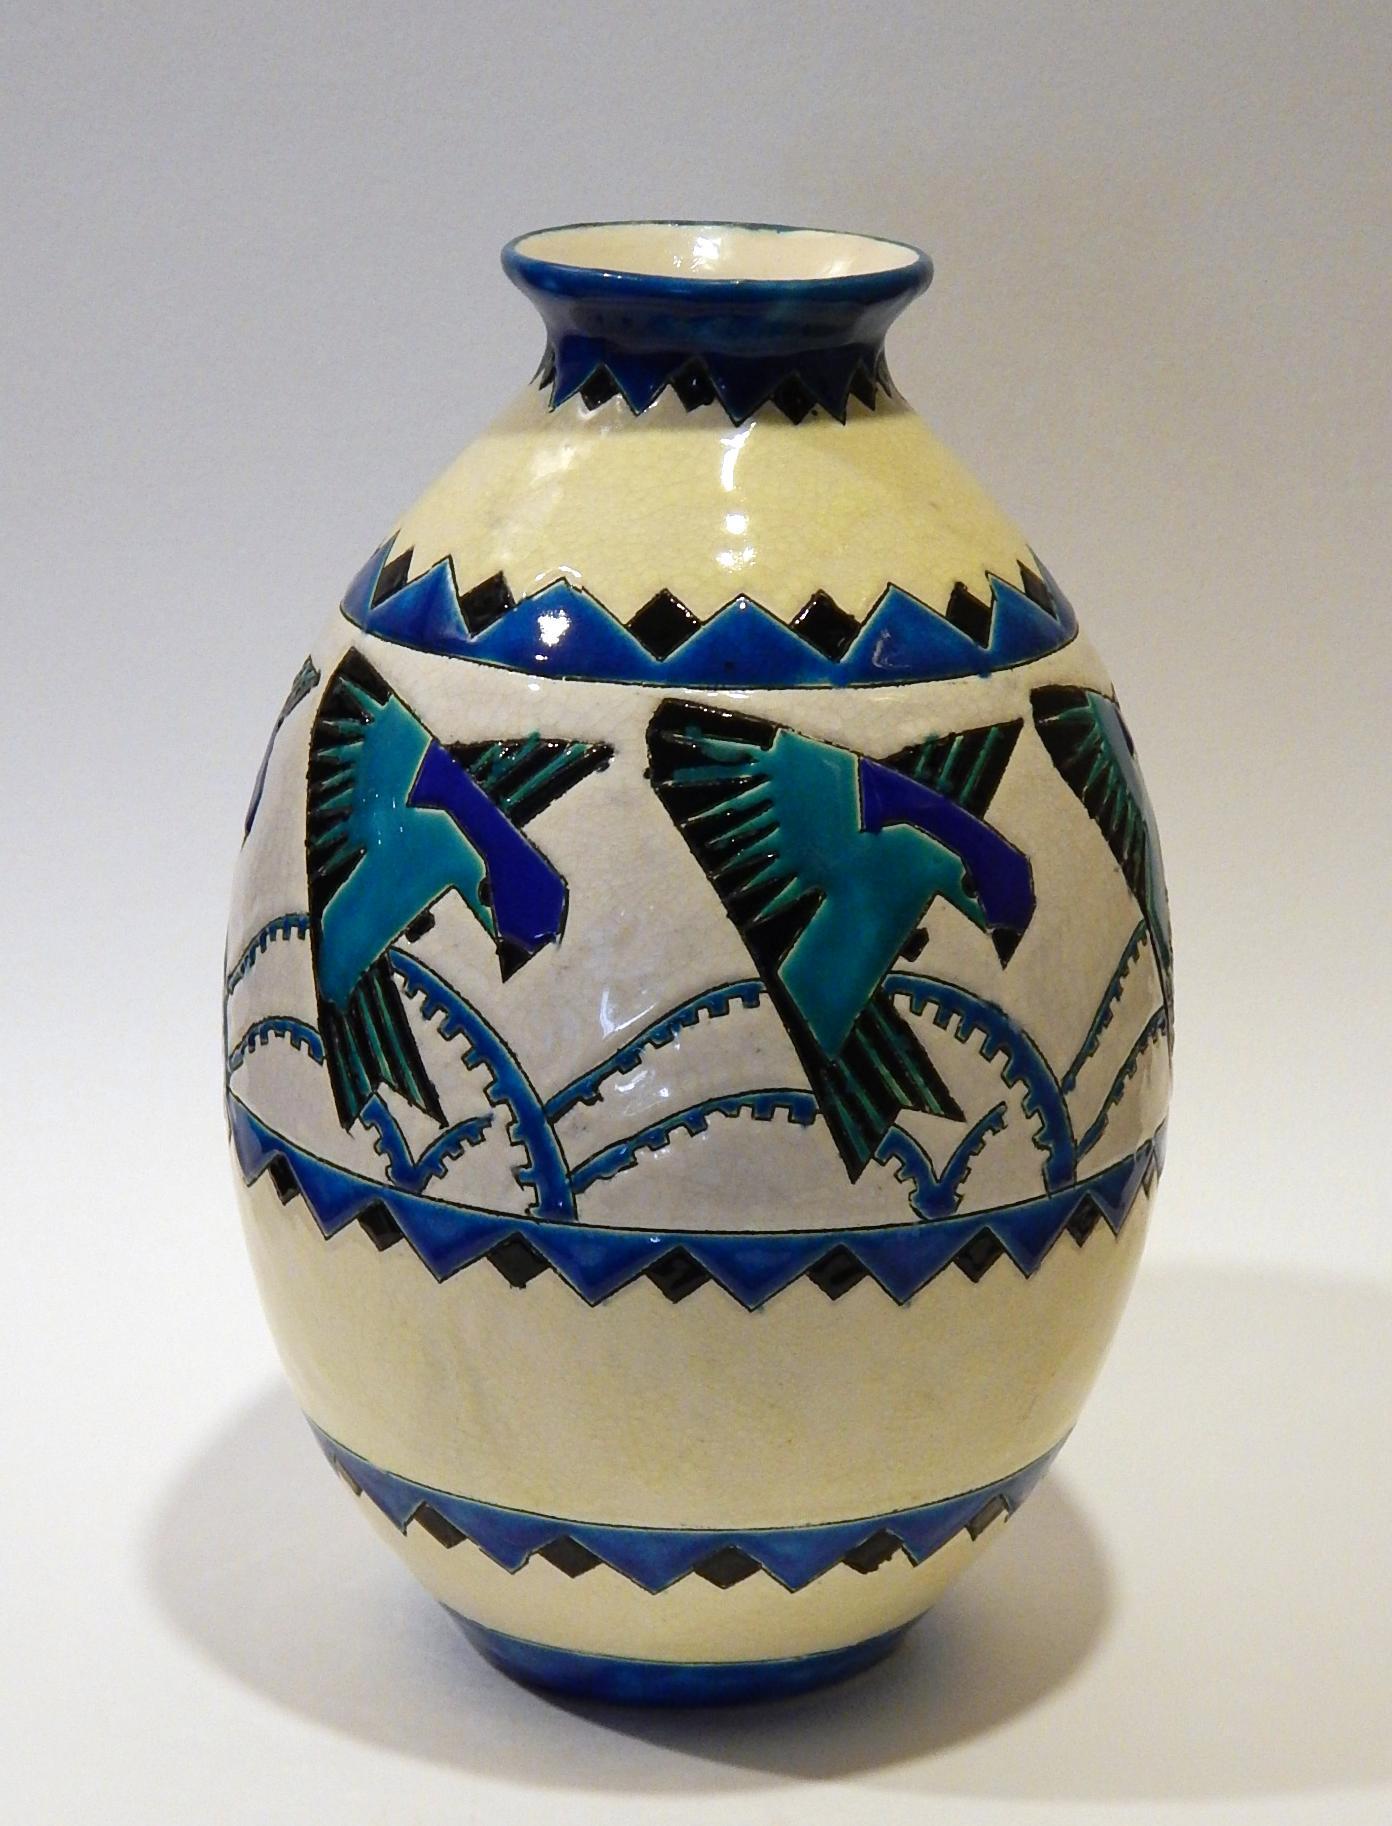 Magnifique vase Keramis avec un motif d'oiseau stylisé répété autour du centre.
Mesures : 12